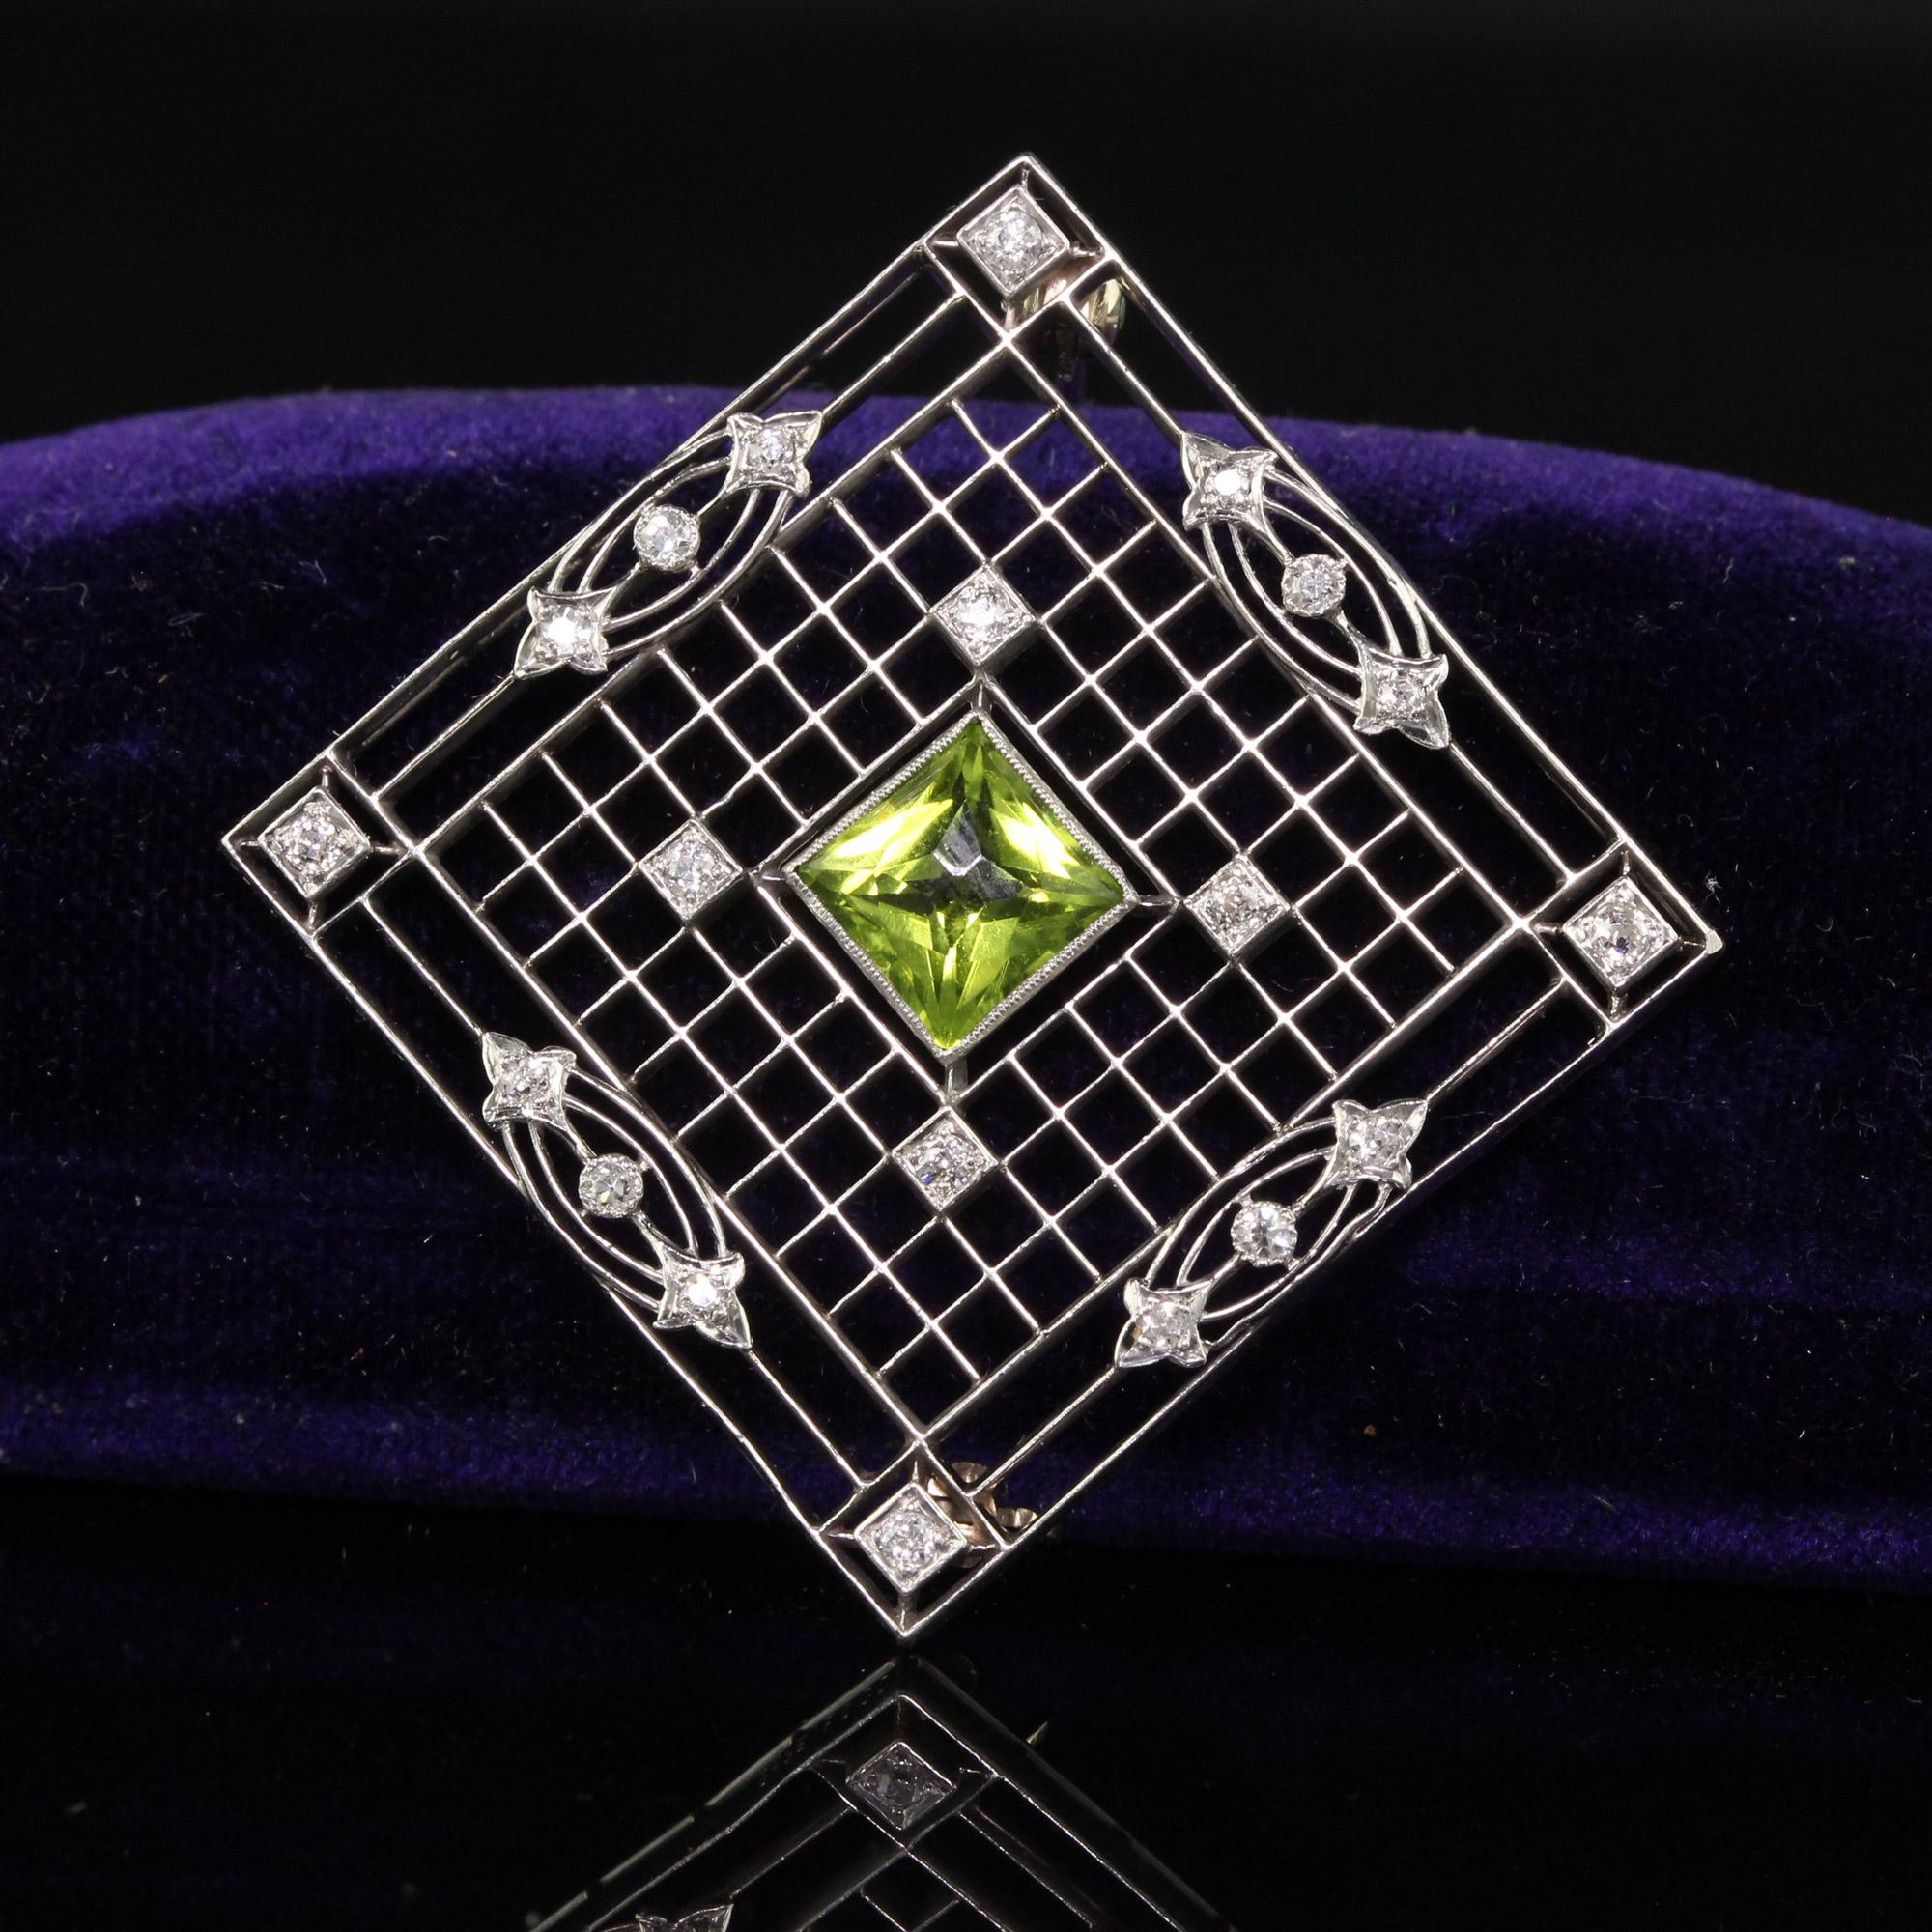 Schöne antike Art Deco Shreve und Co Platin Französisch Cut Peridot Diamant filigrane Pin. Diese unglaubliche Brosche von Shreve and Co ist aus Platin gefertigt. In der Mitte befindet sich ein wunderschöner Peridot im französischen Schliff, und auf